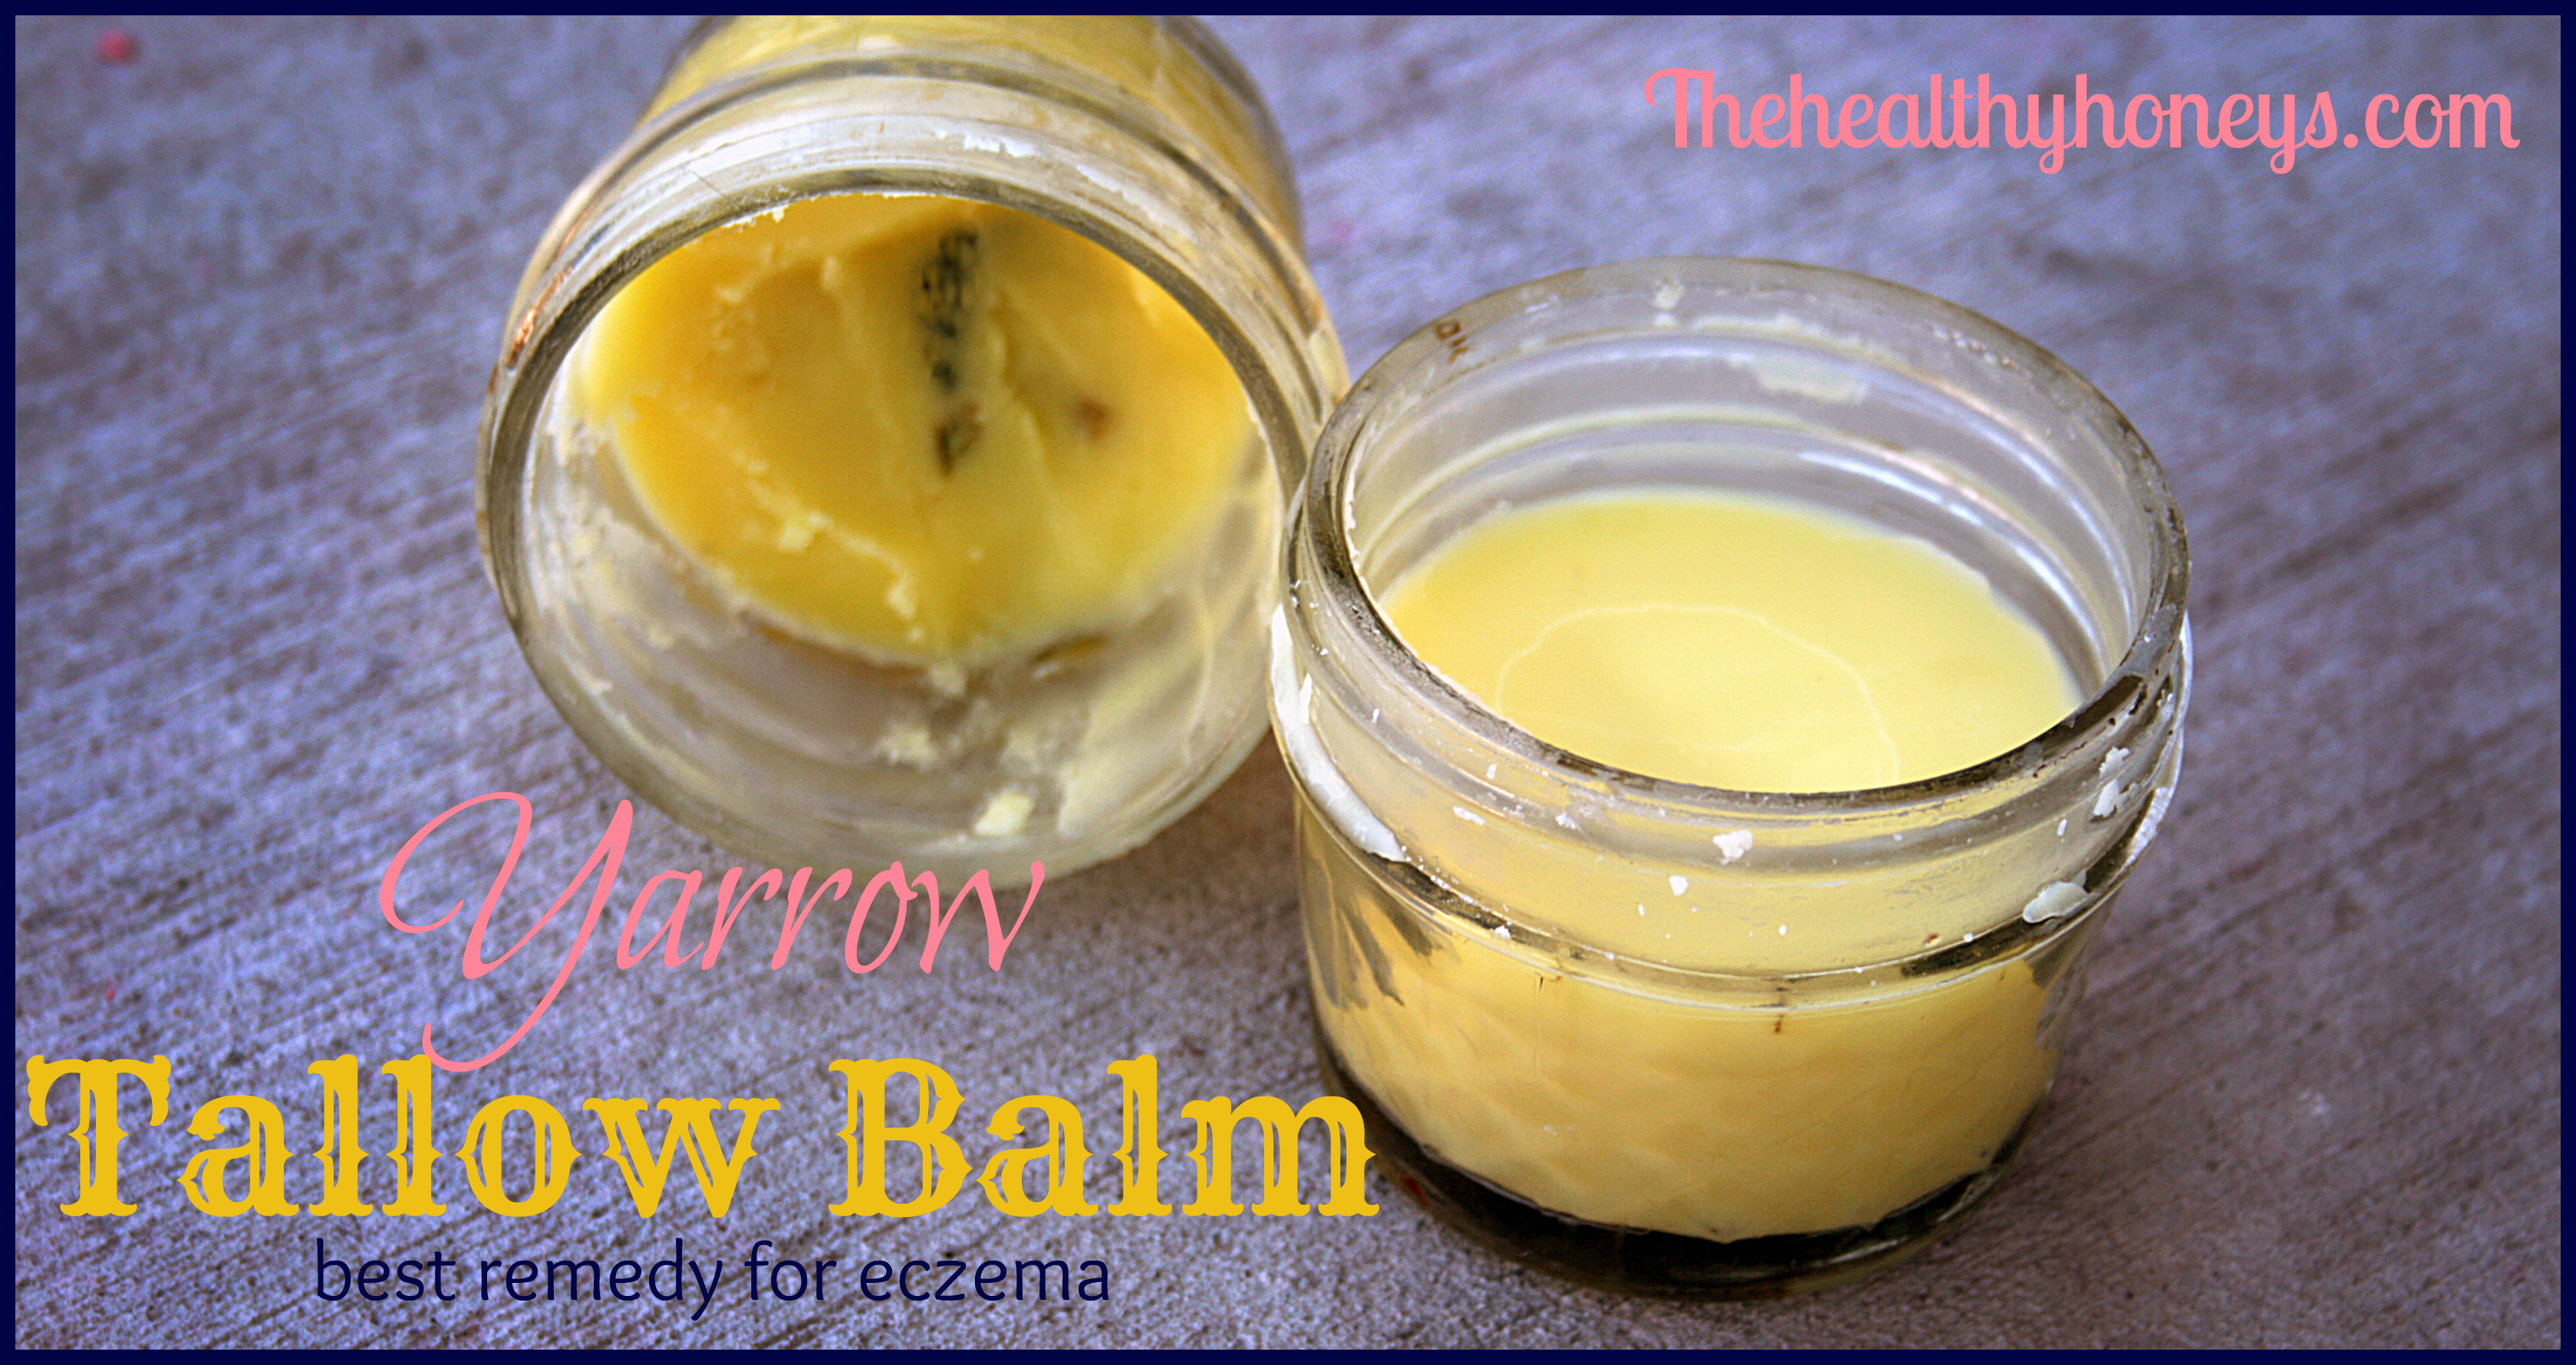 Yarrow Tallow Balm – Eczema Remedy